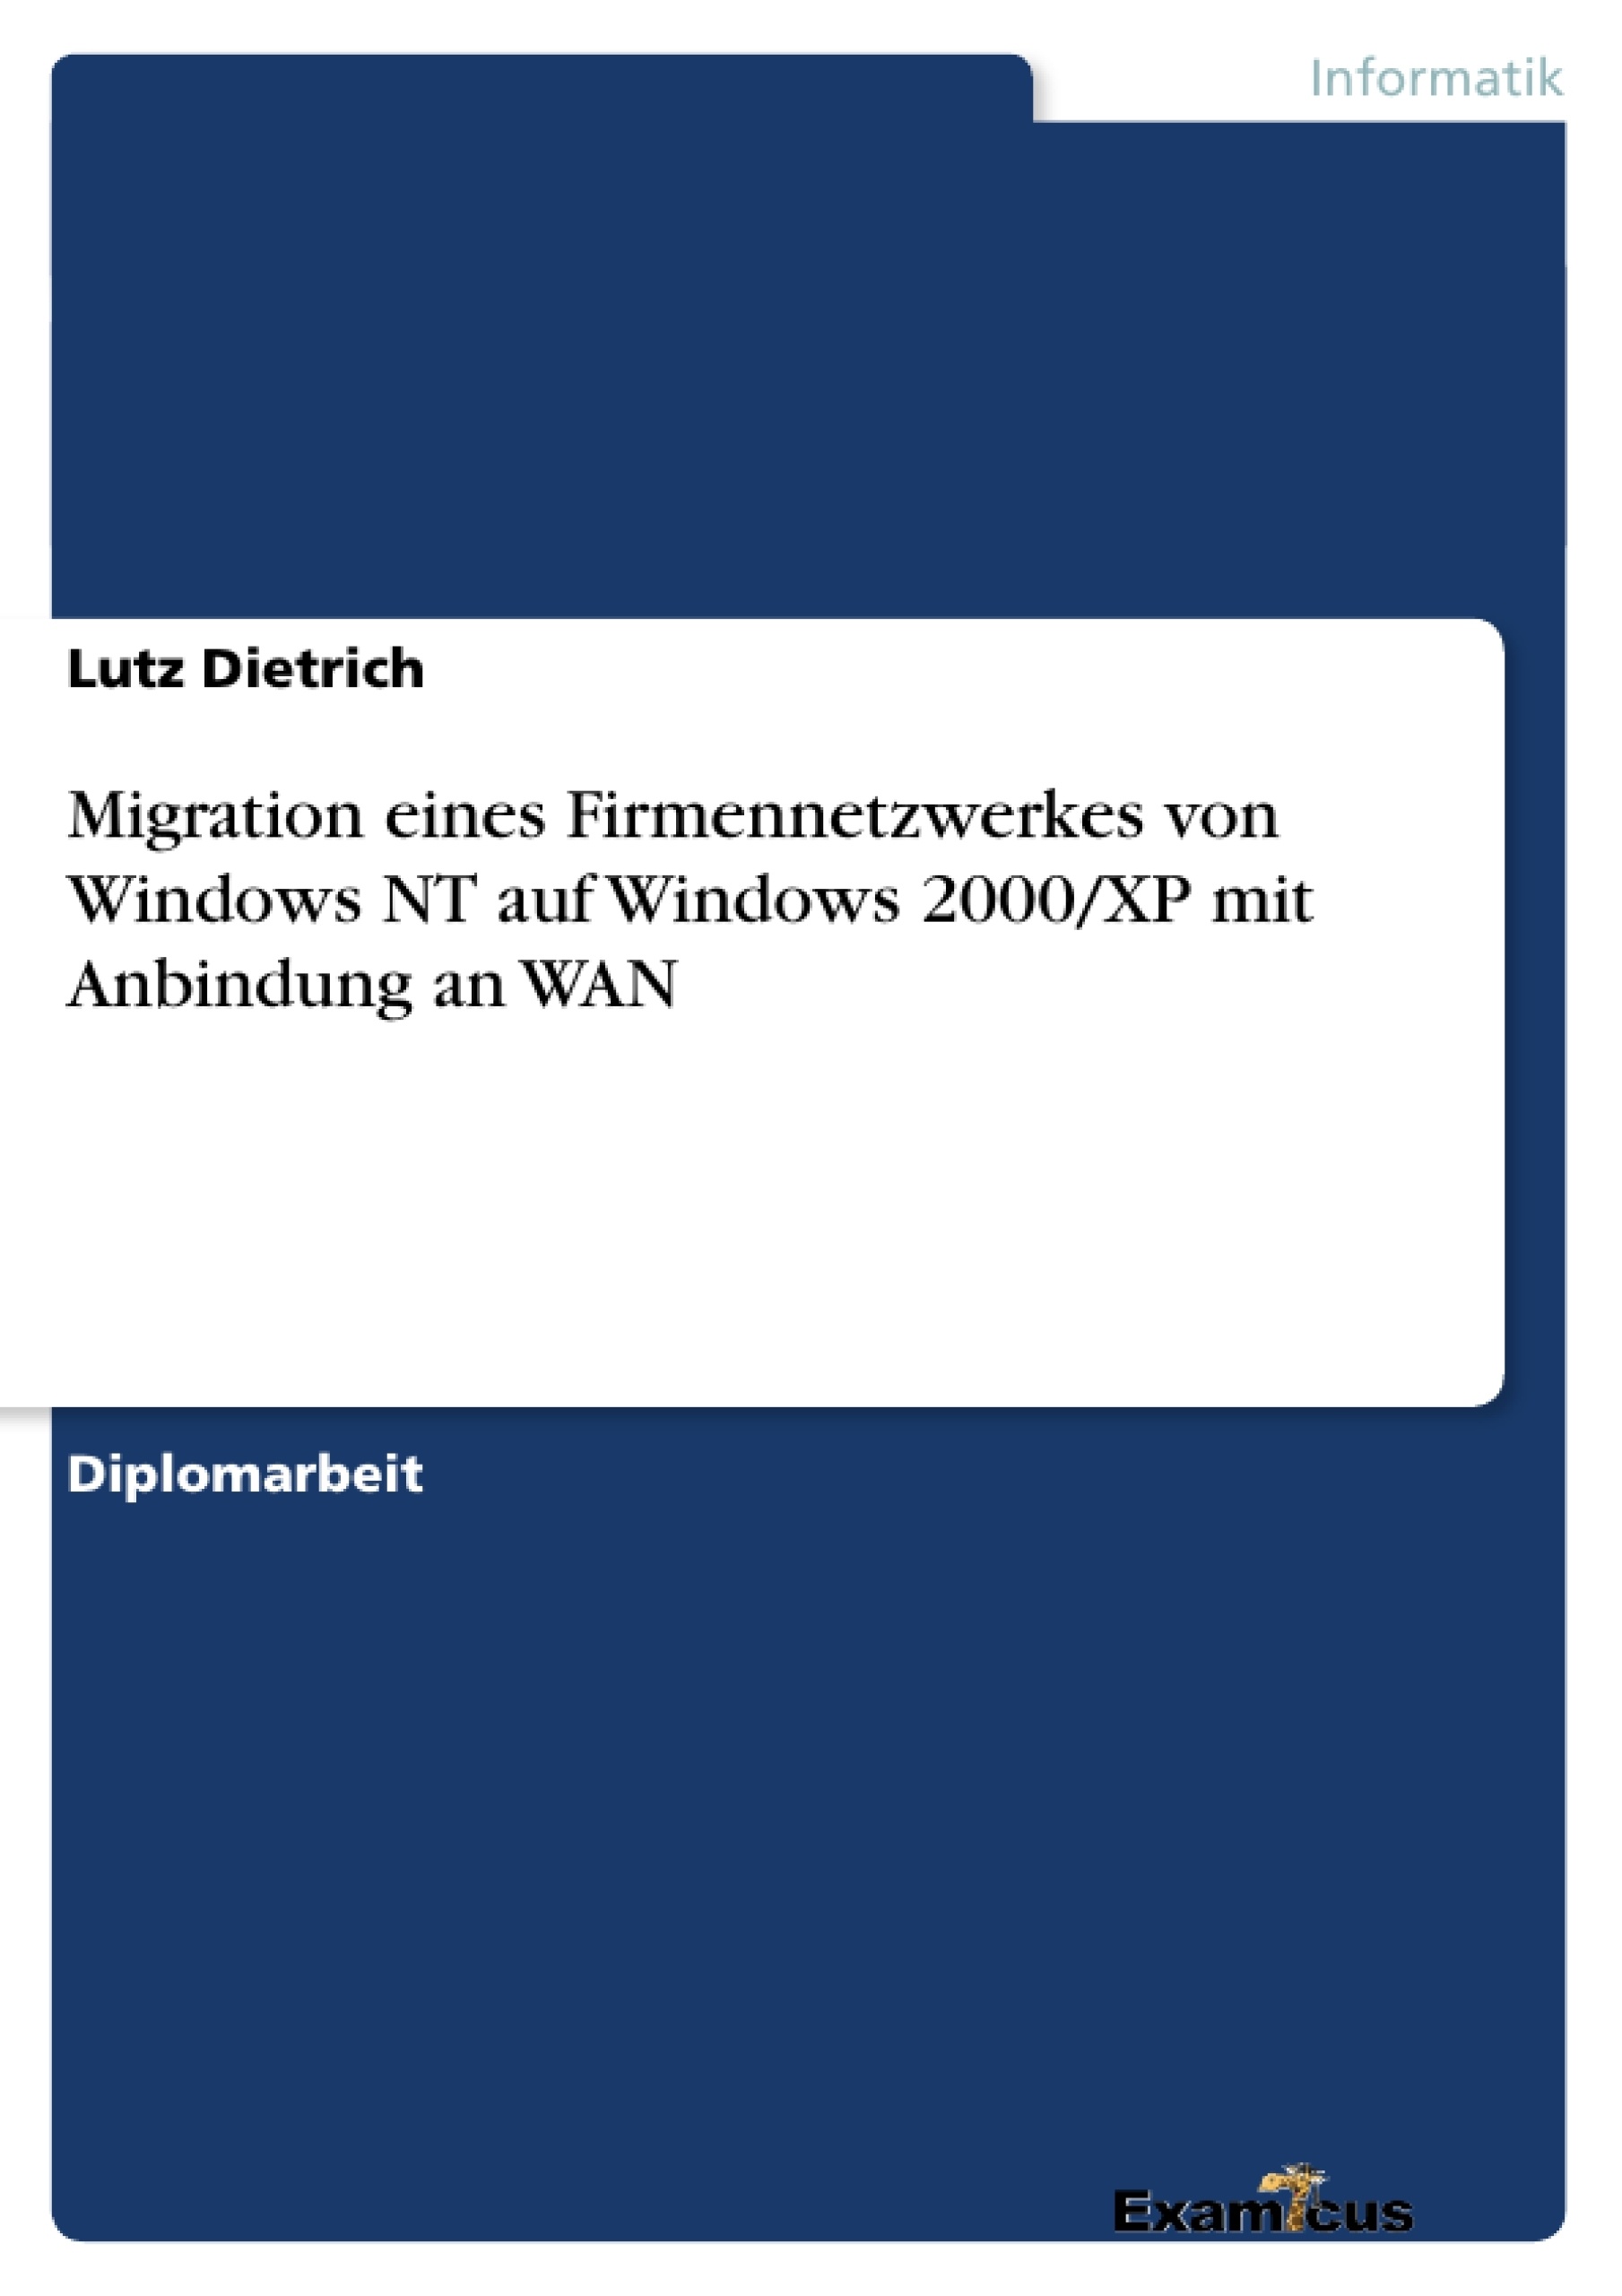 Título: Migration eines Firmennetzwerkes von Windows NT auf Windows 2000/XP mit Anbindung an WAN